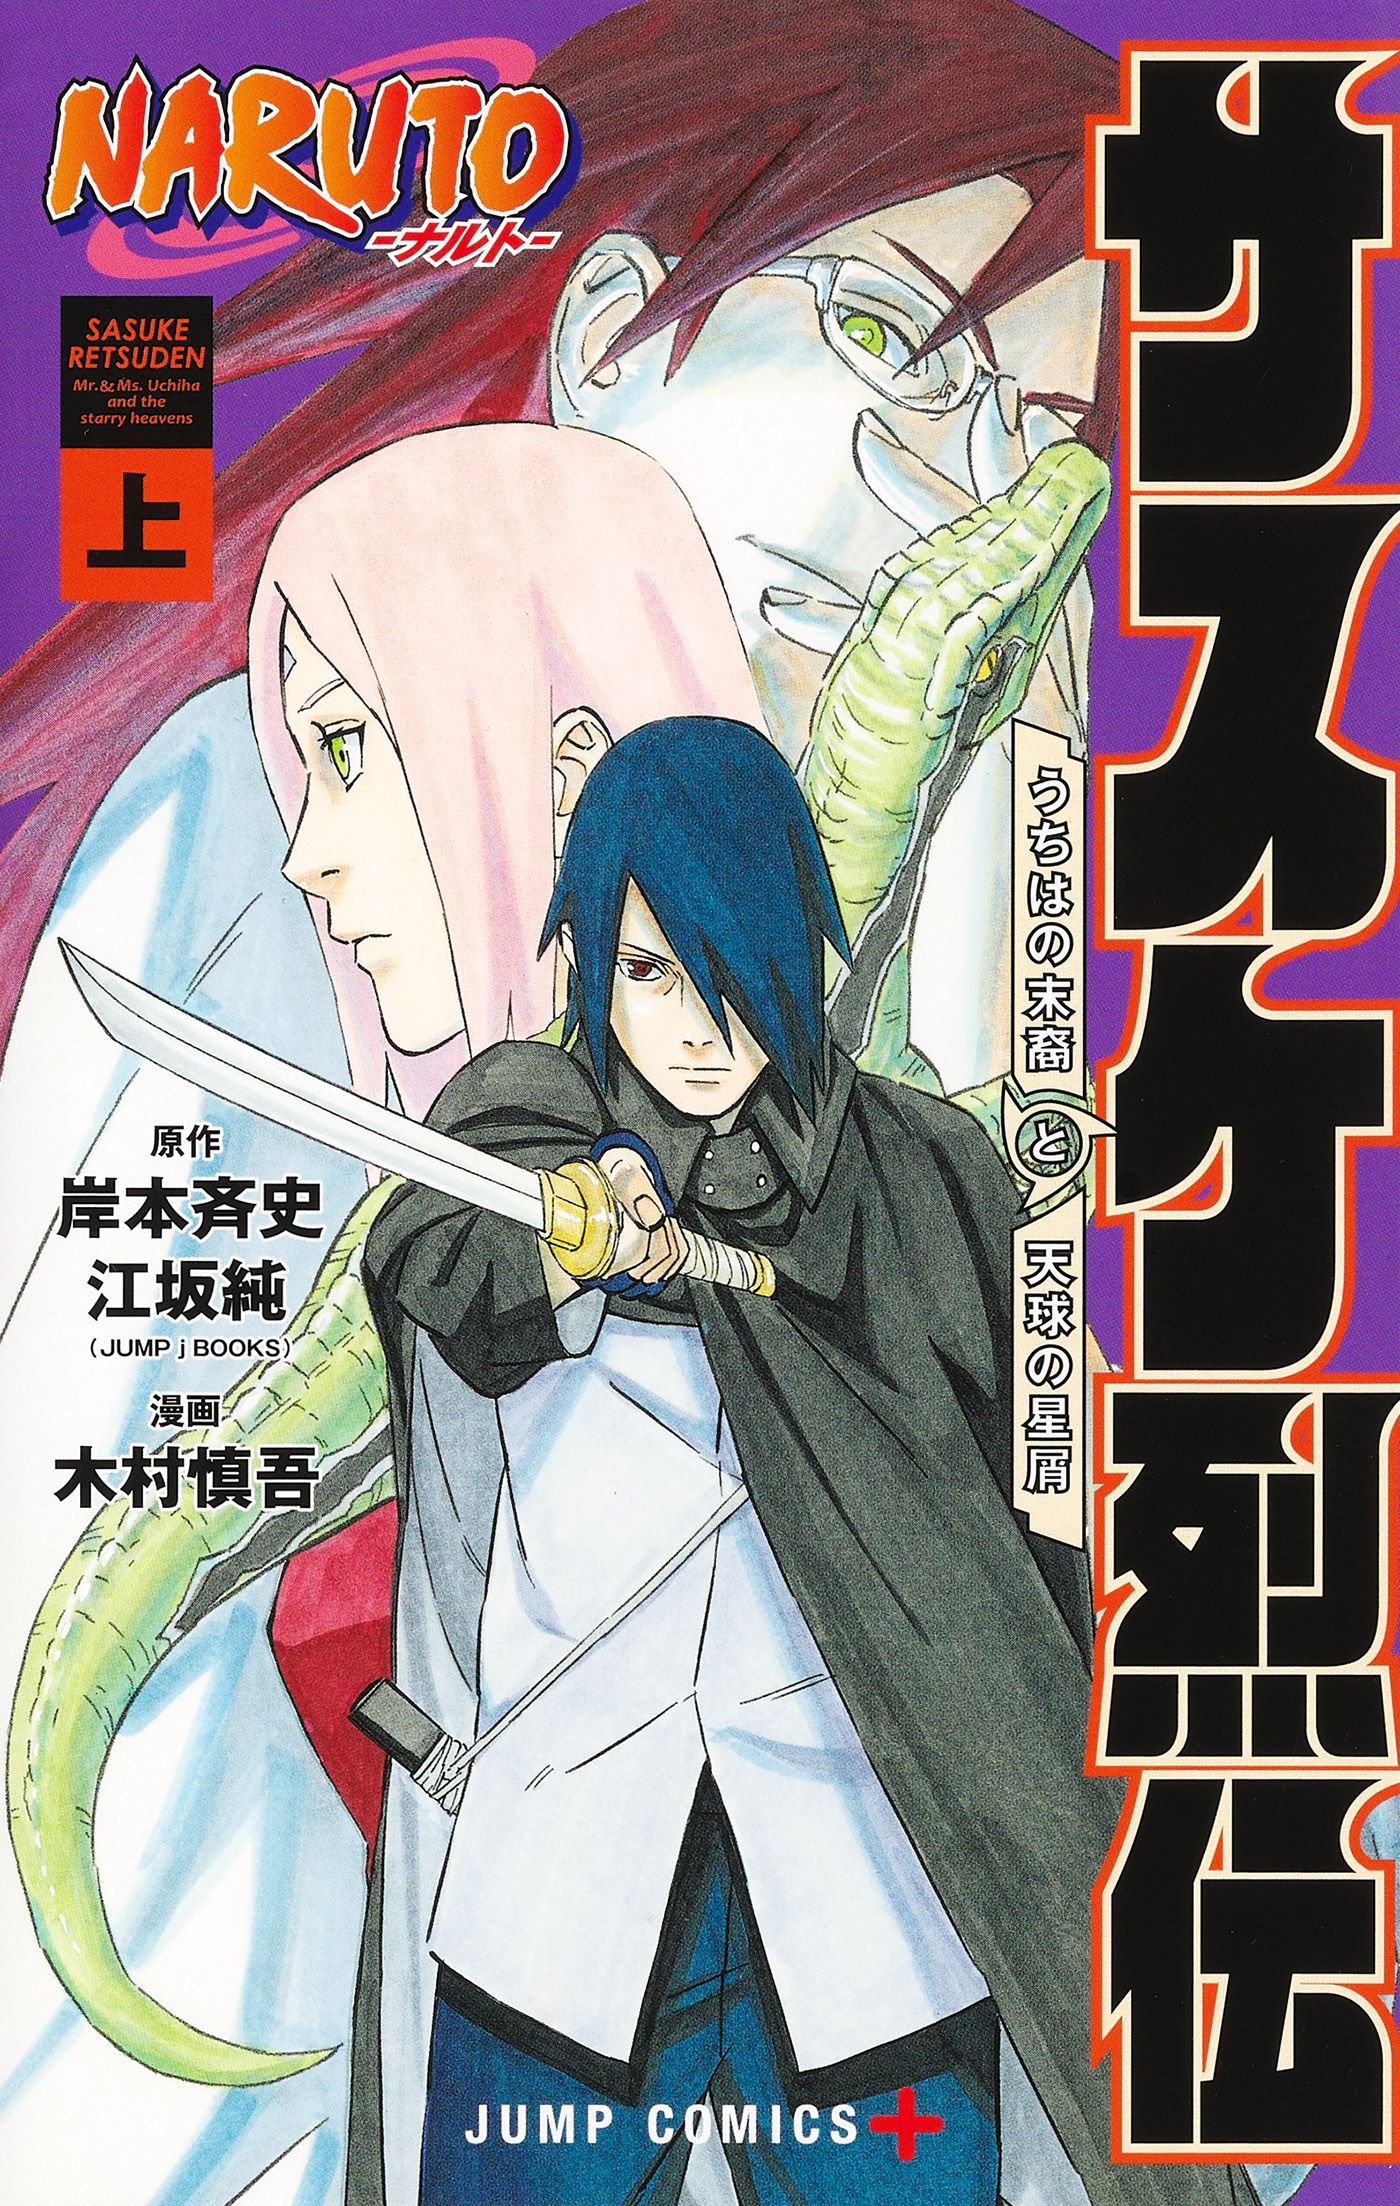 Sasuke's Story: The Uchiha and the Heavenly Stardust Manga